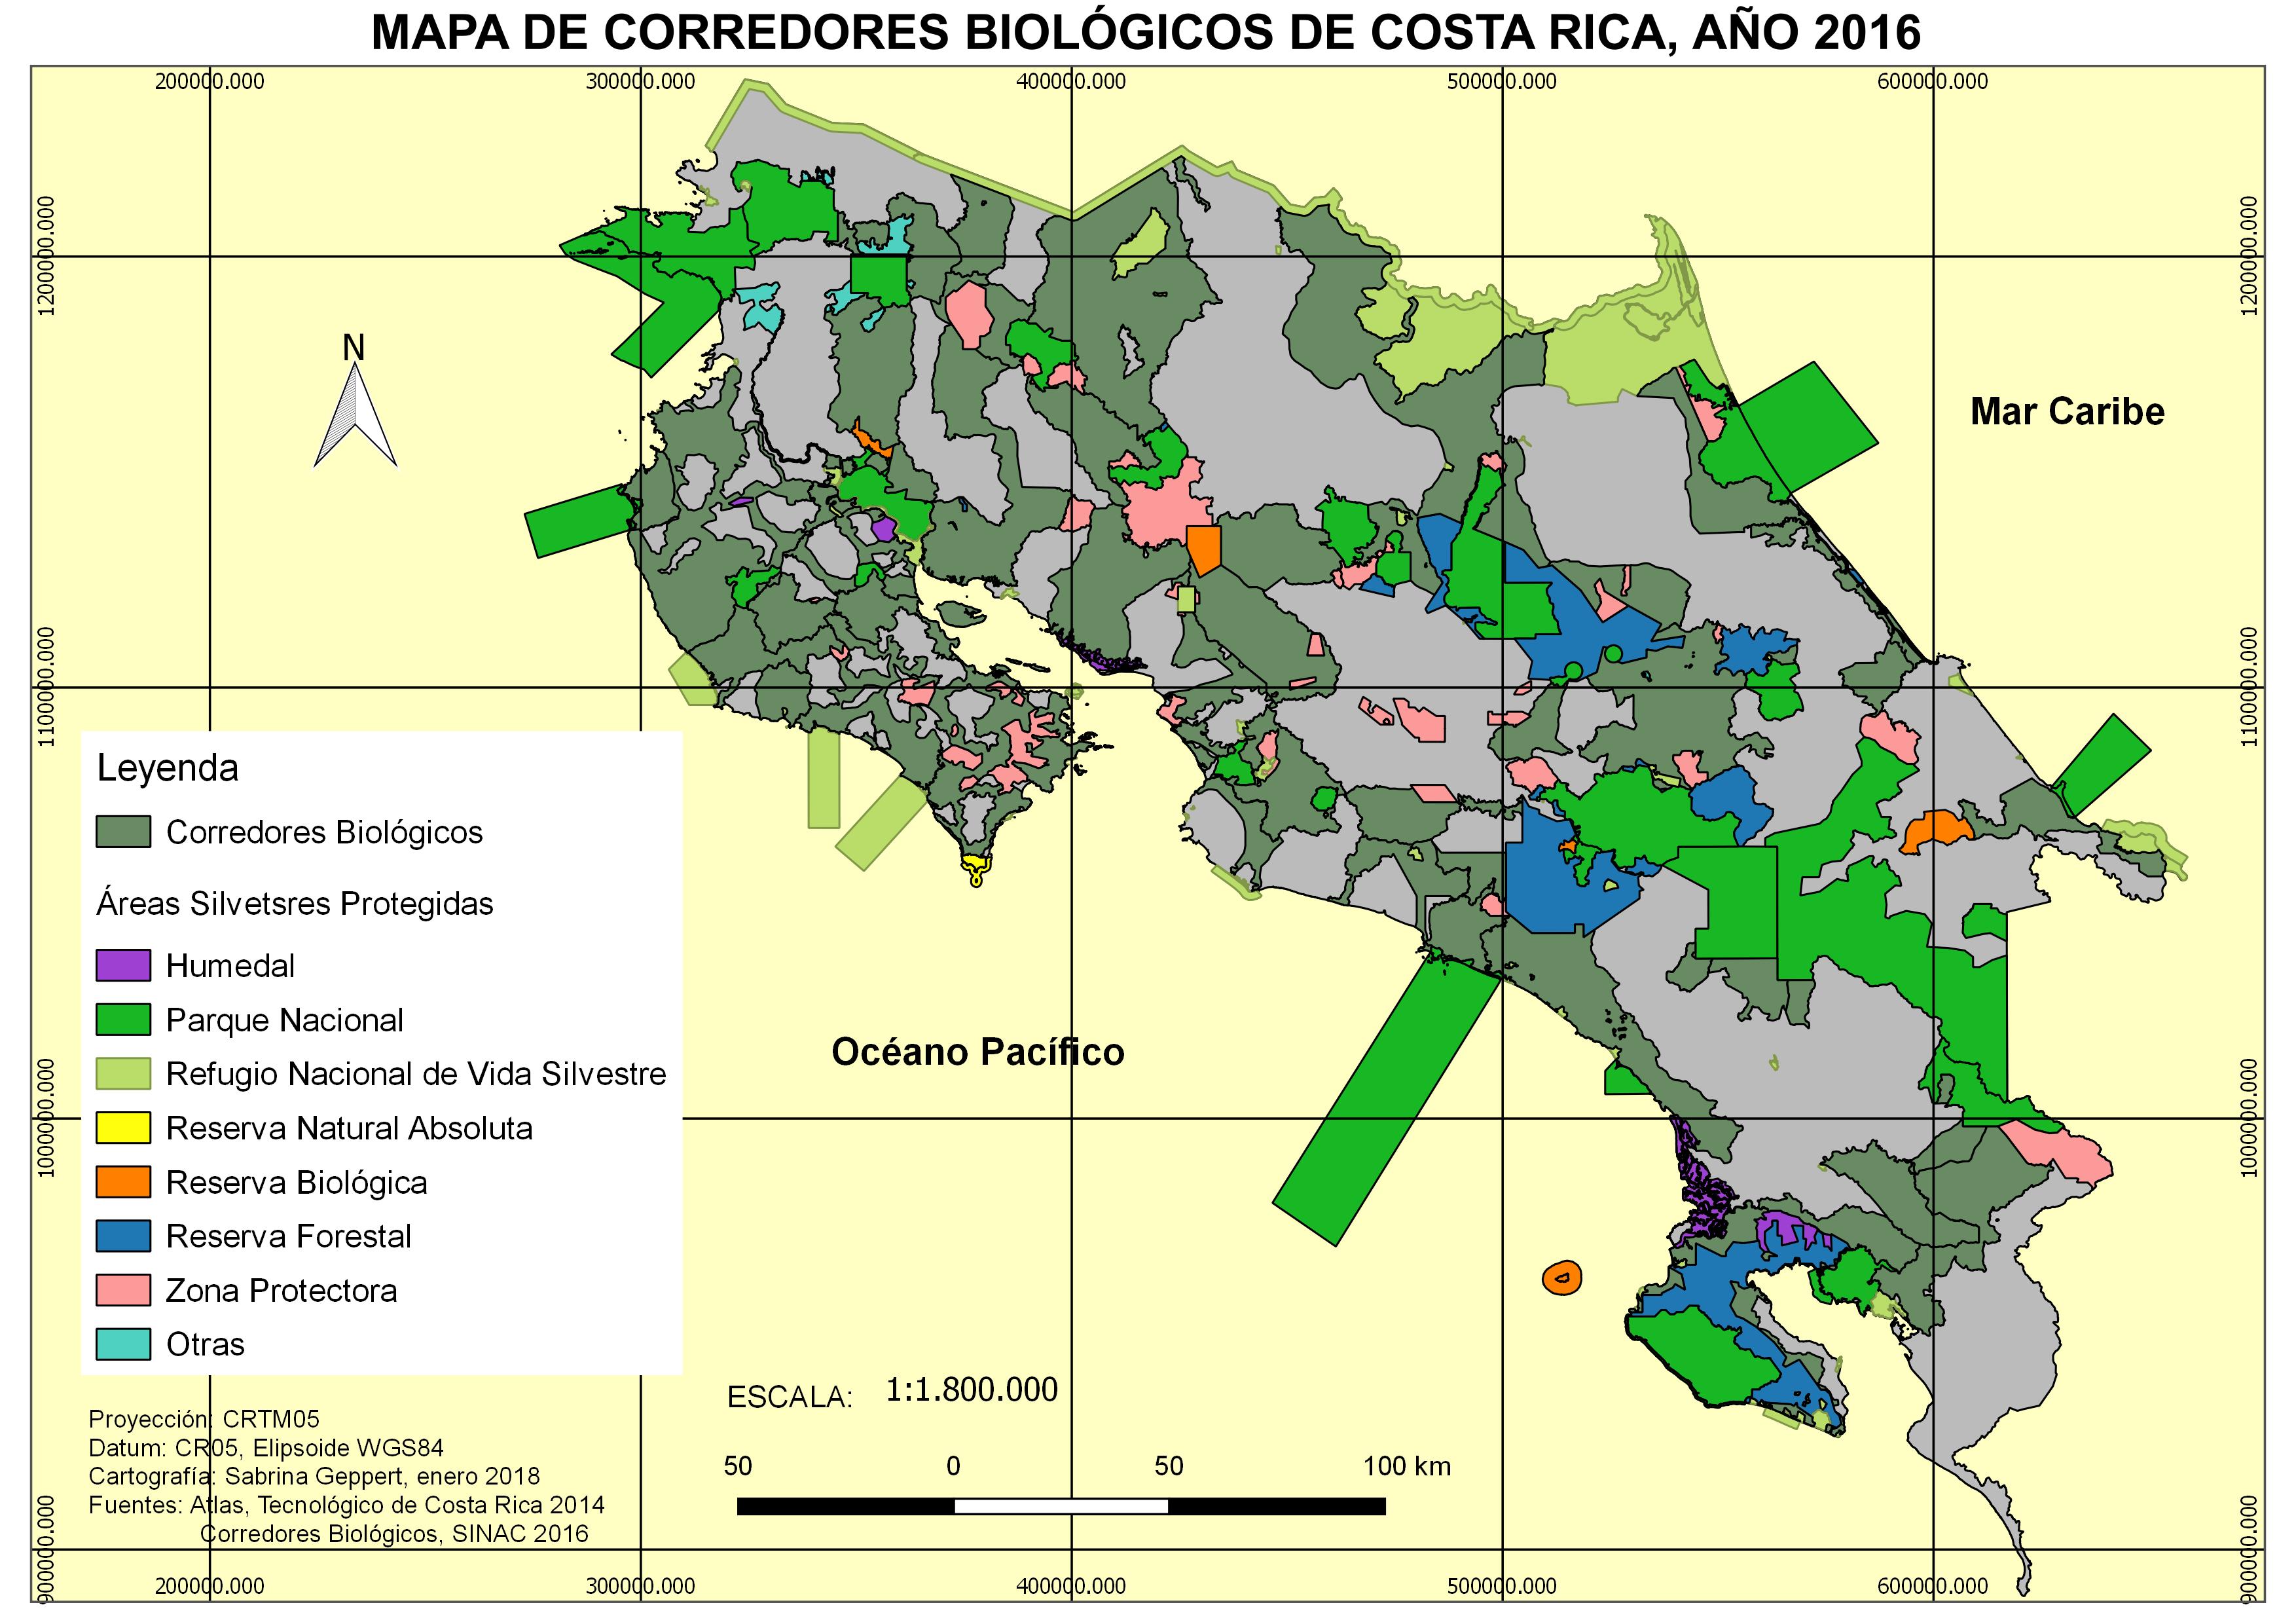 Mapa de Corredores Biológicos de Costa Rica 2016